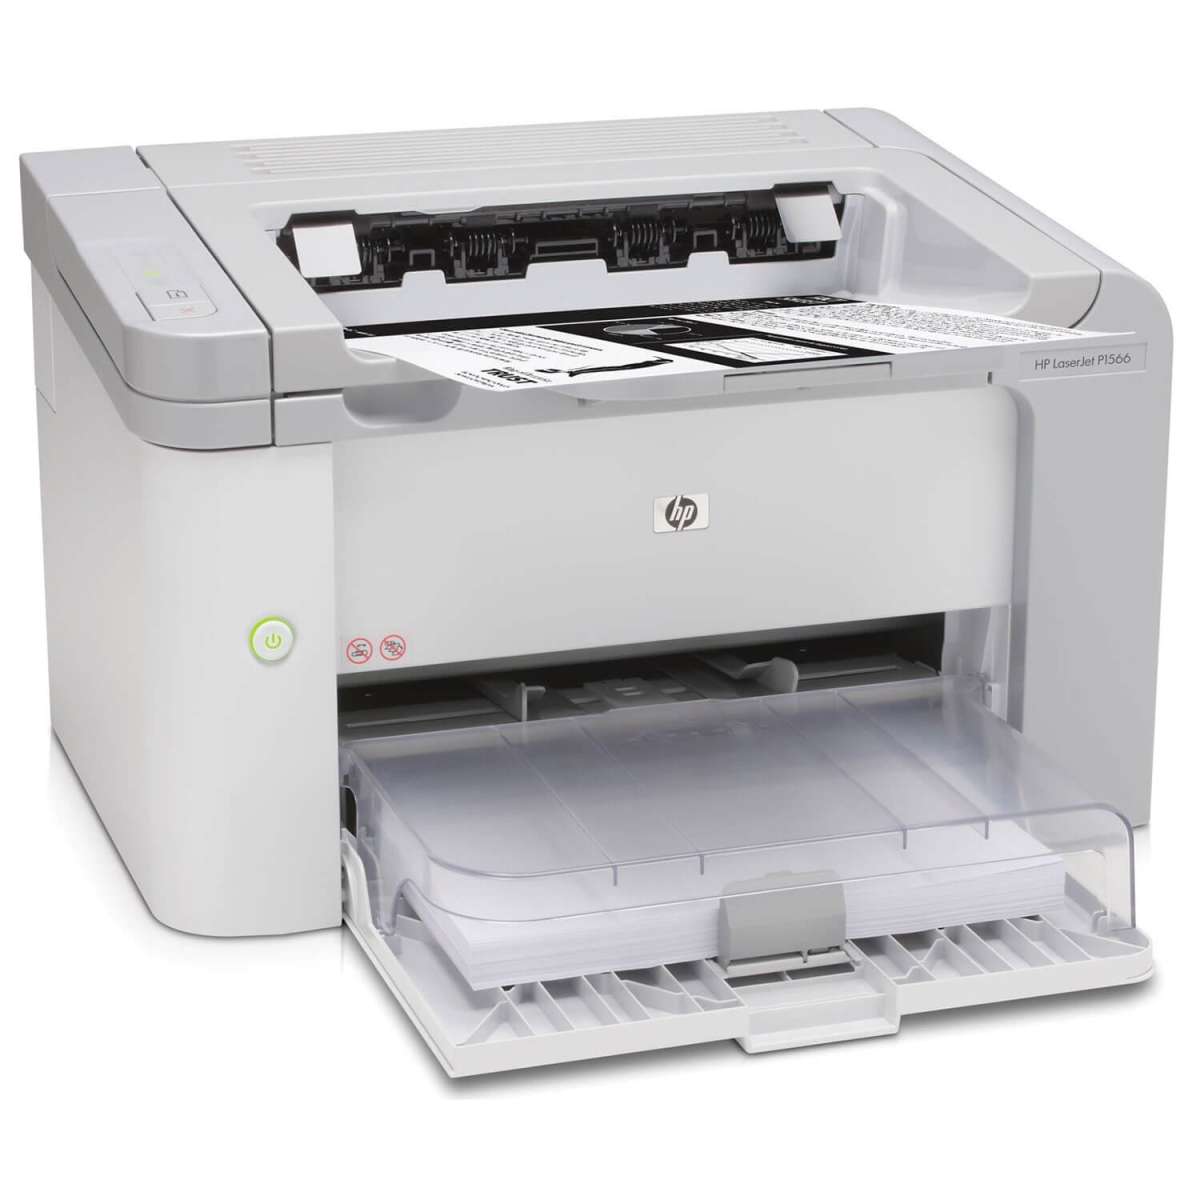 Gebrauchte HP Laserjet Pro P1566 Laserdrucker